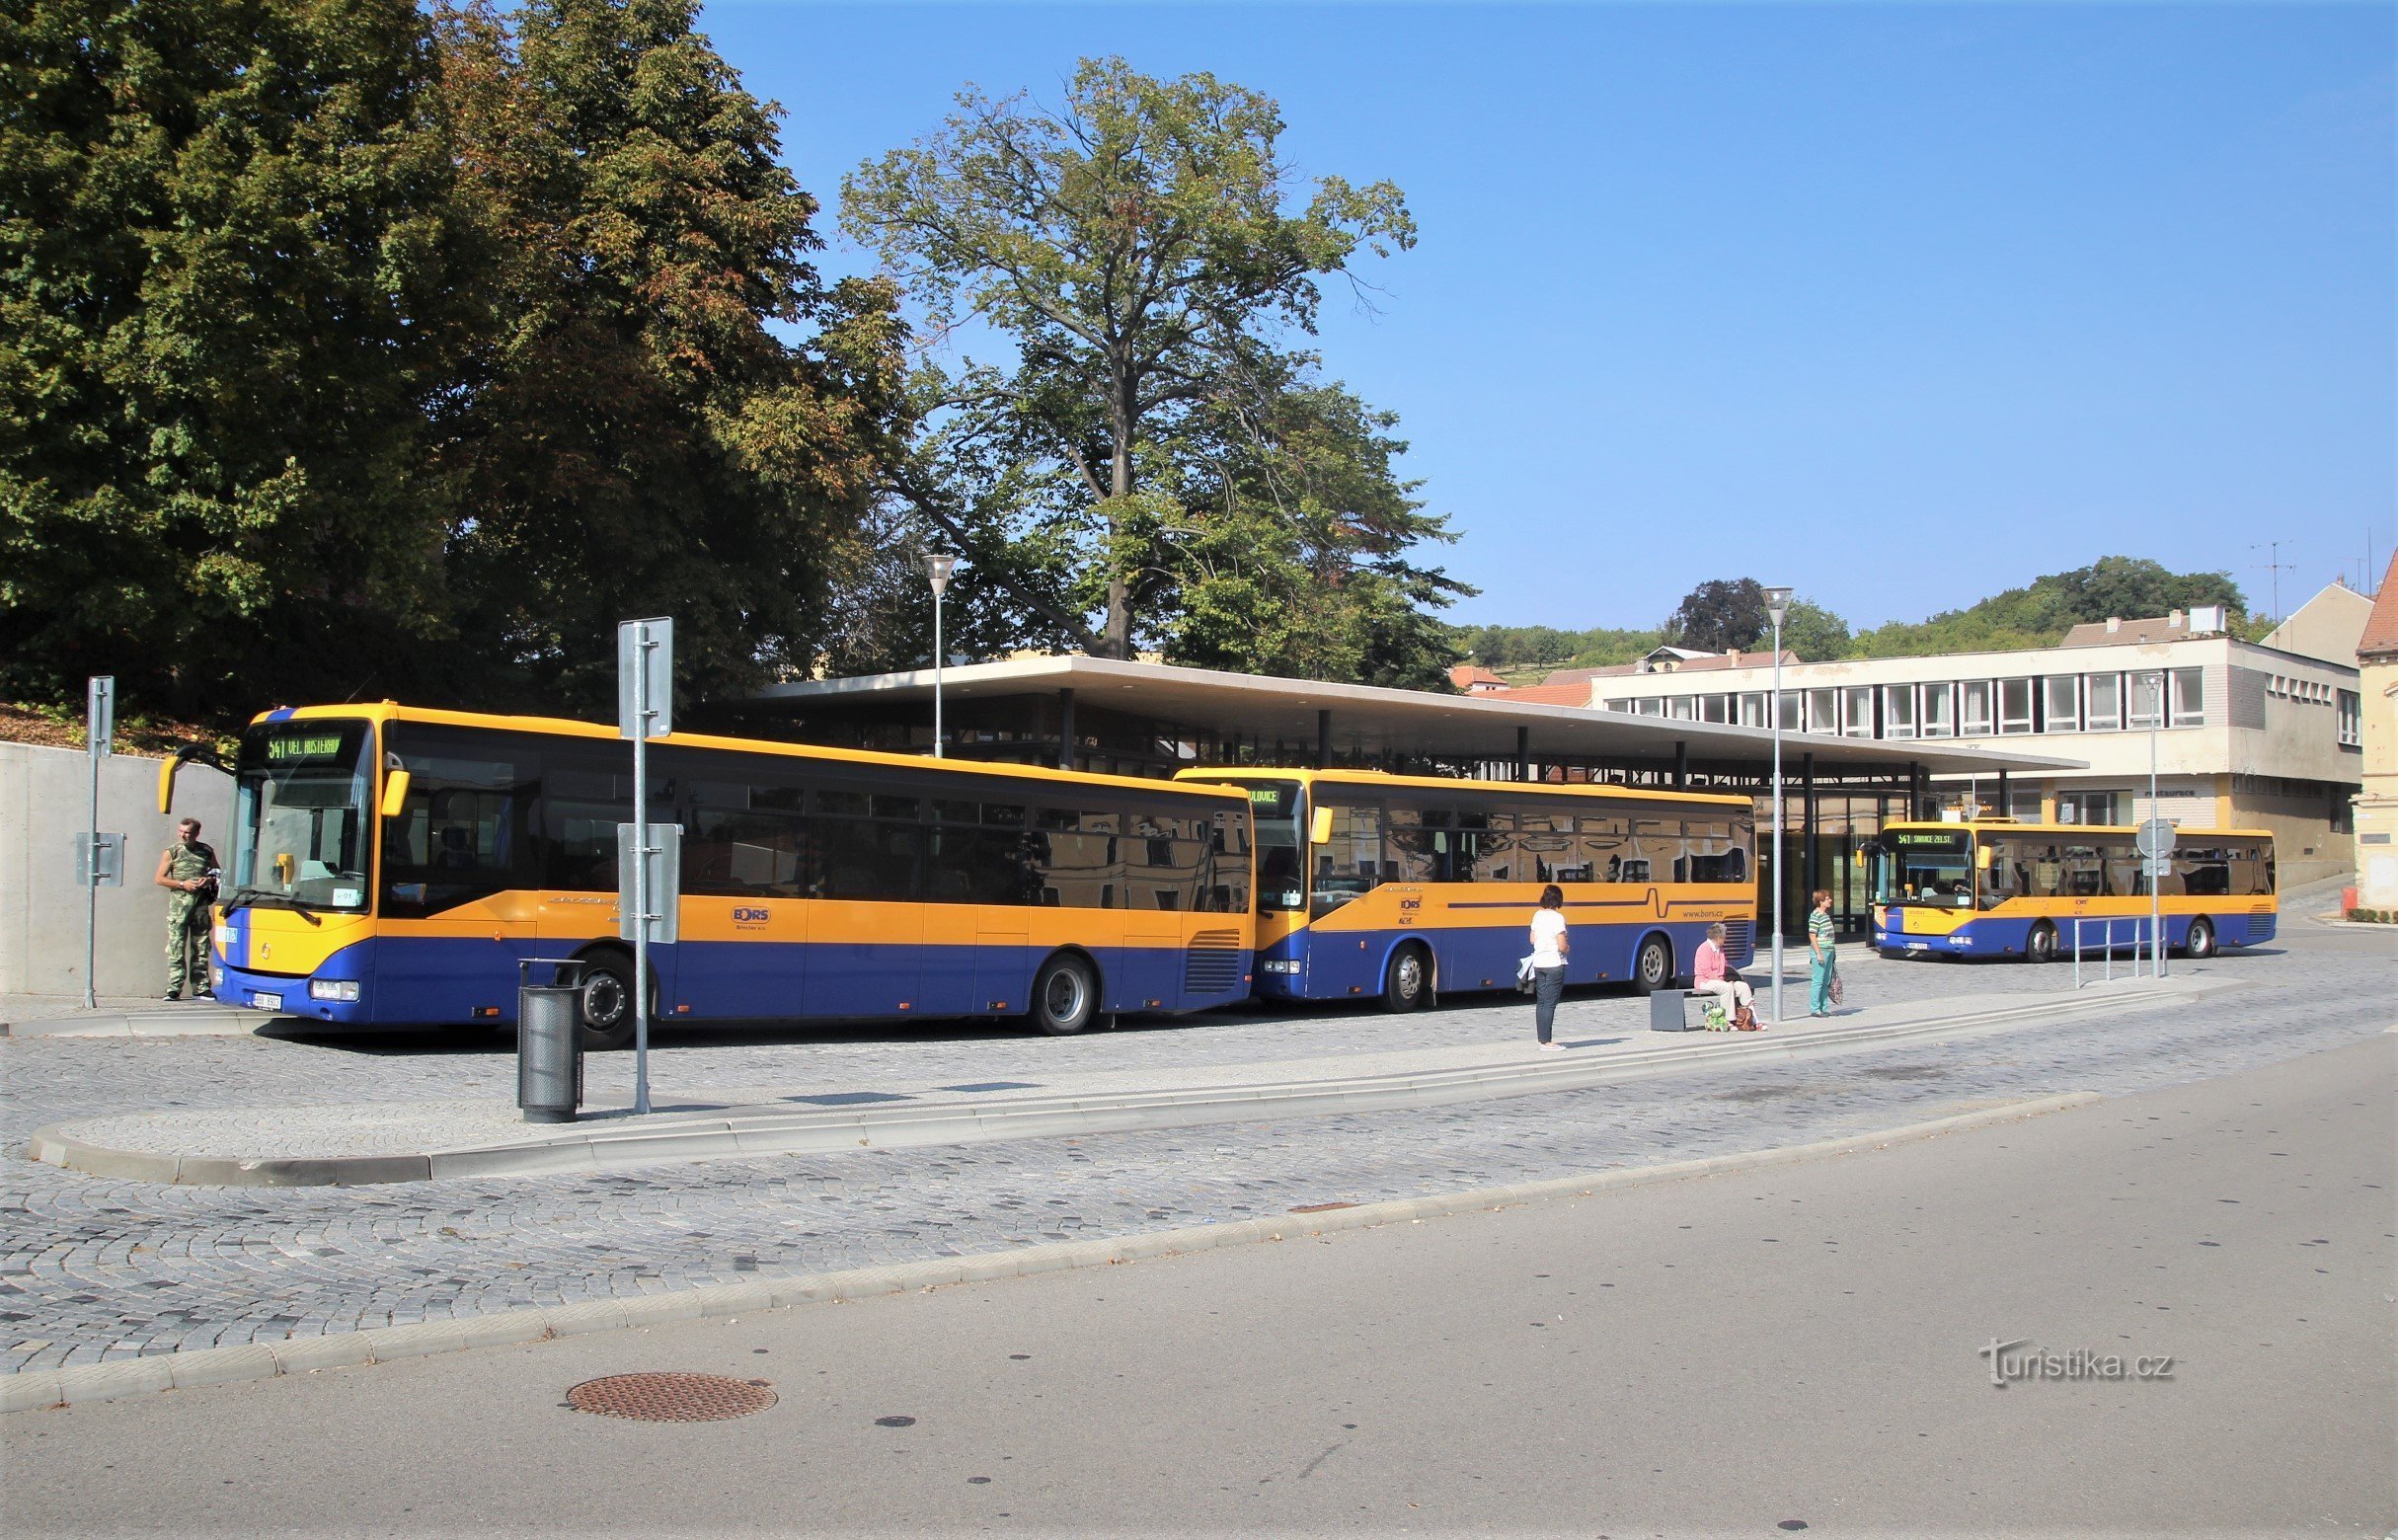 Hatten av Brno - ny transportterminal